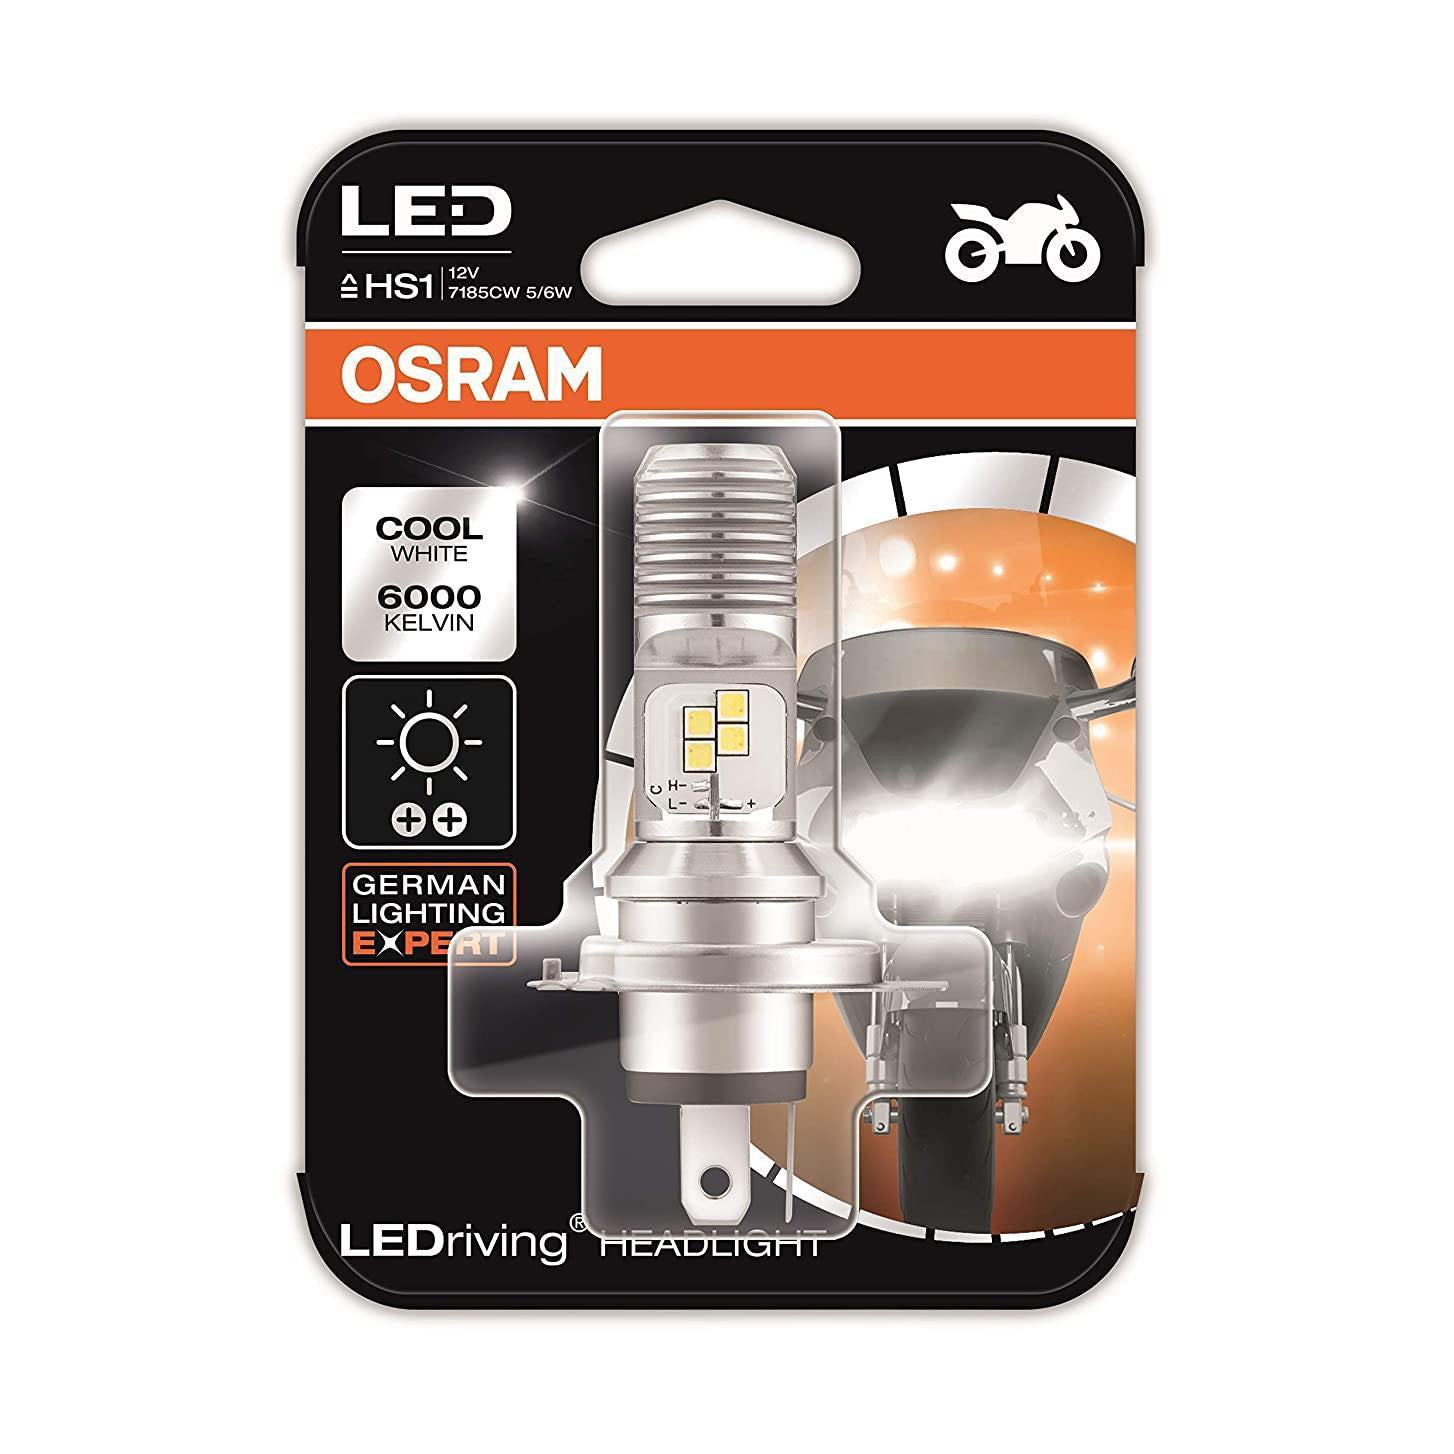 Osram LED Driving Headlight HS1 7185CW 5/6W 12V PX43T Blister Pack